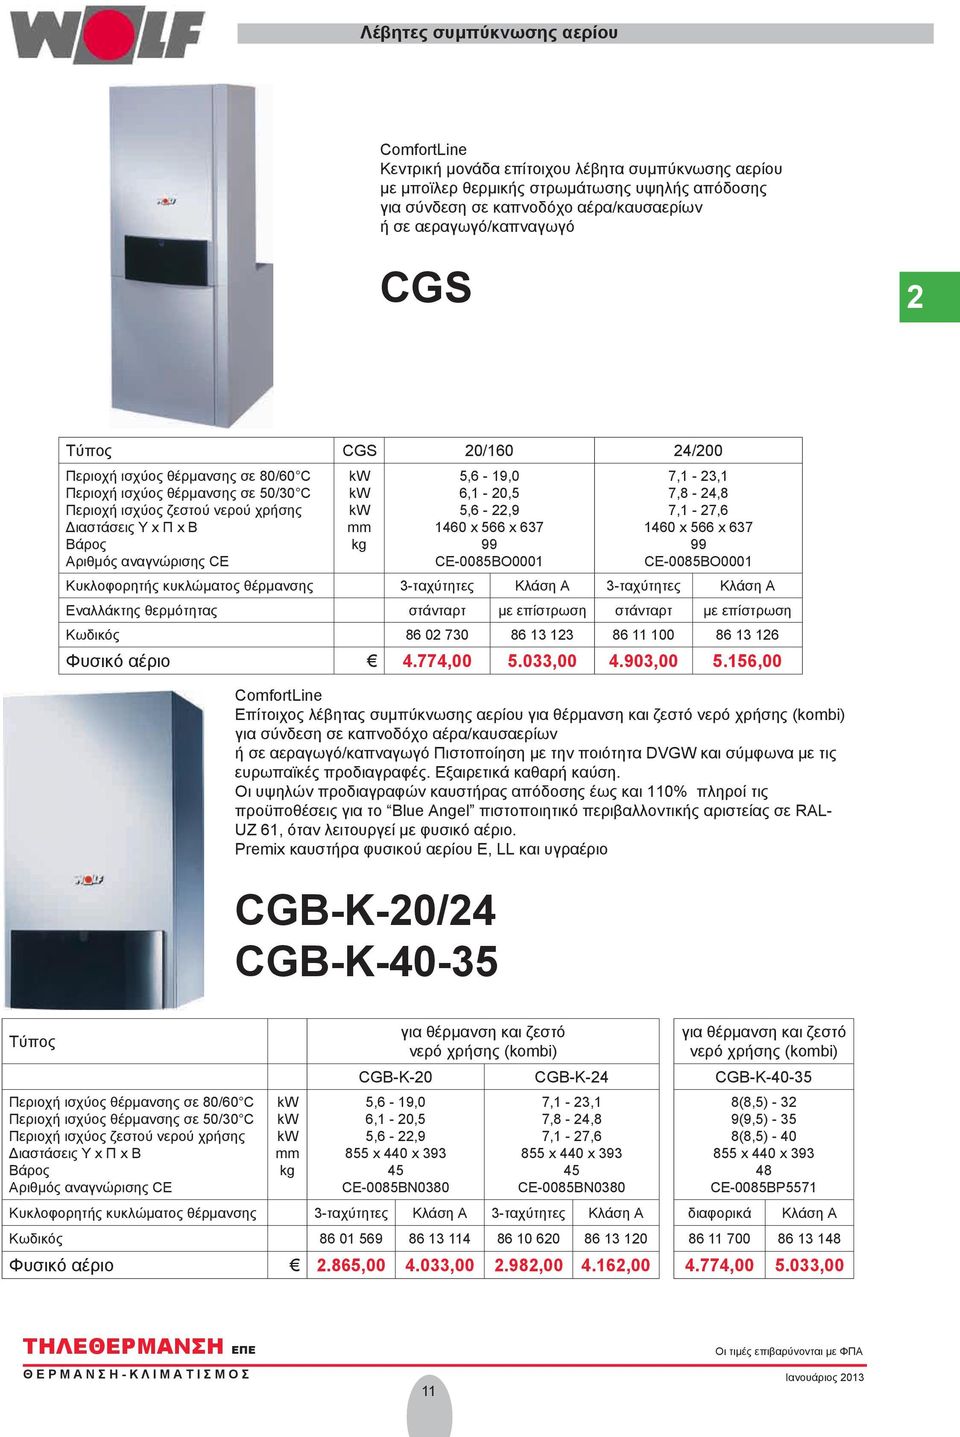 αναγνώρισης CE kw kw kw mm kg 5,6-19,0 6,1-20,5 5,6-22,9 1460 x 566 x 637 99 CE-0085BO0001 7,1-23,1 7,8-24,8 7,1-27,6 1460 x 566 x 637 99 CE-0085BO0001 Κυκλοφορητής κυκλώματος θέρμανσης 3-ταχύτητες